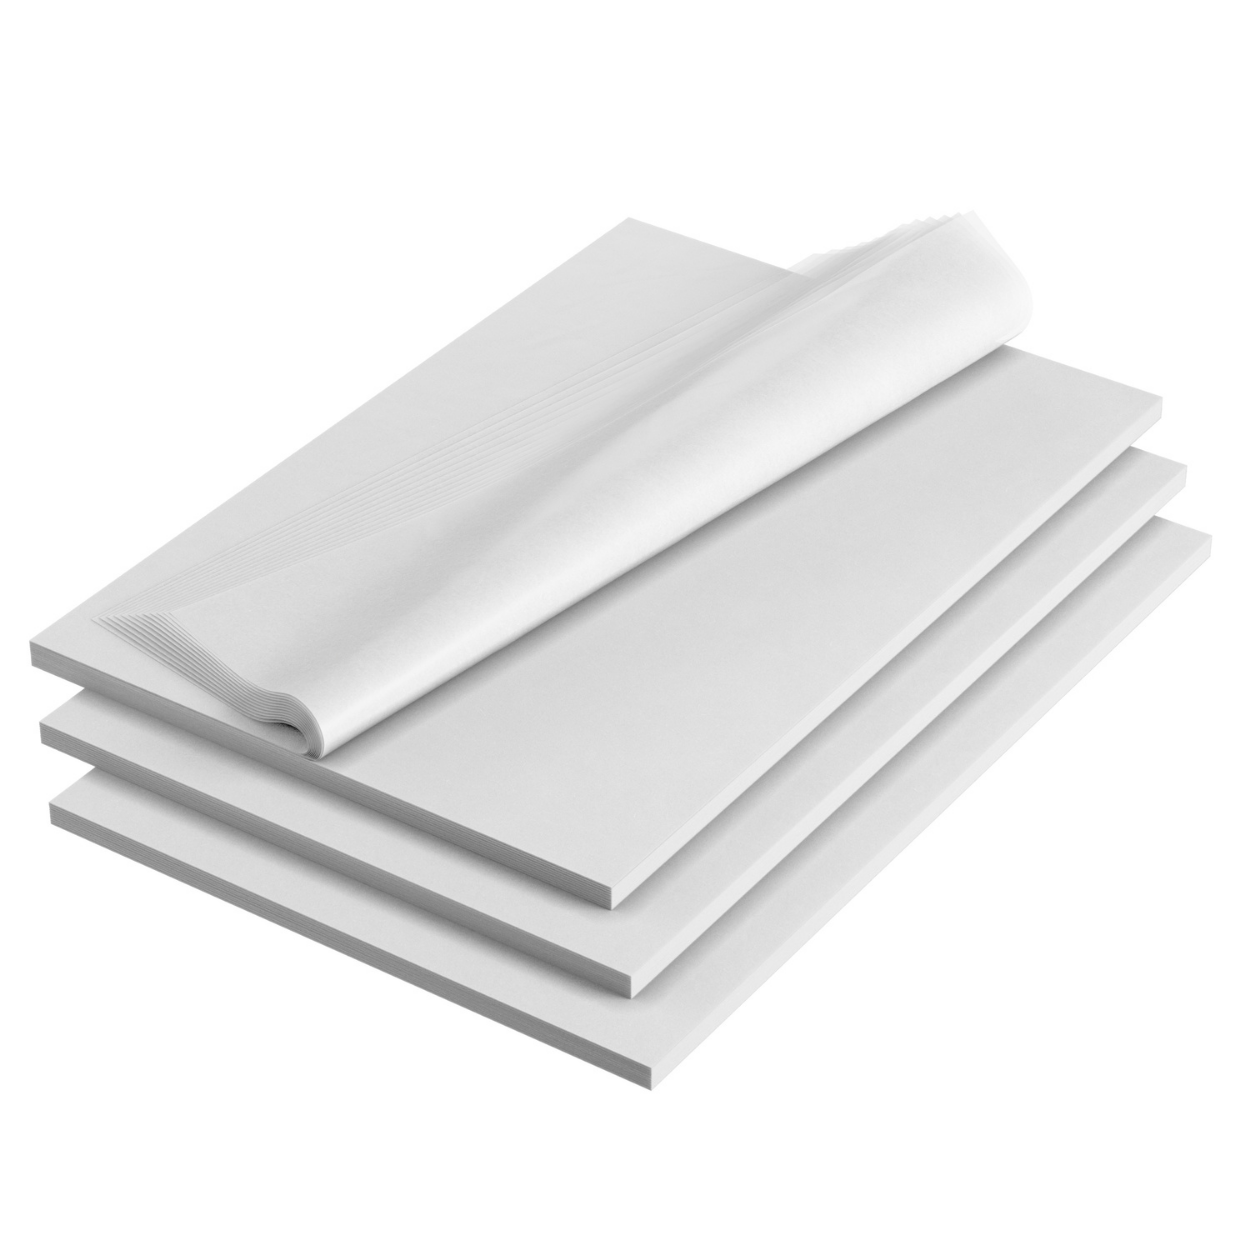 Timeless Floral Gray Tissue Paper, 20x30, Bulk 240 Sheet Pack